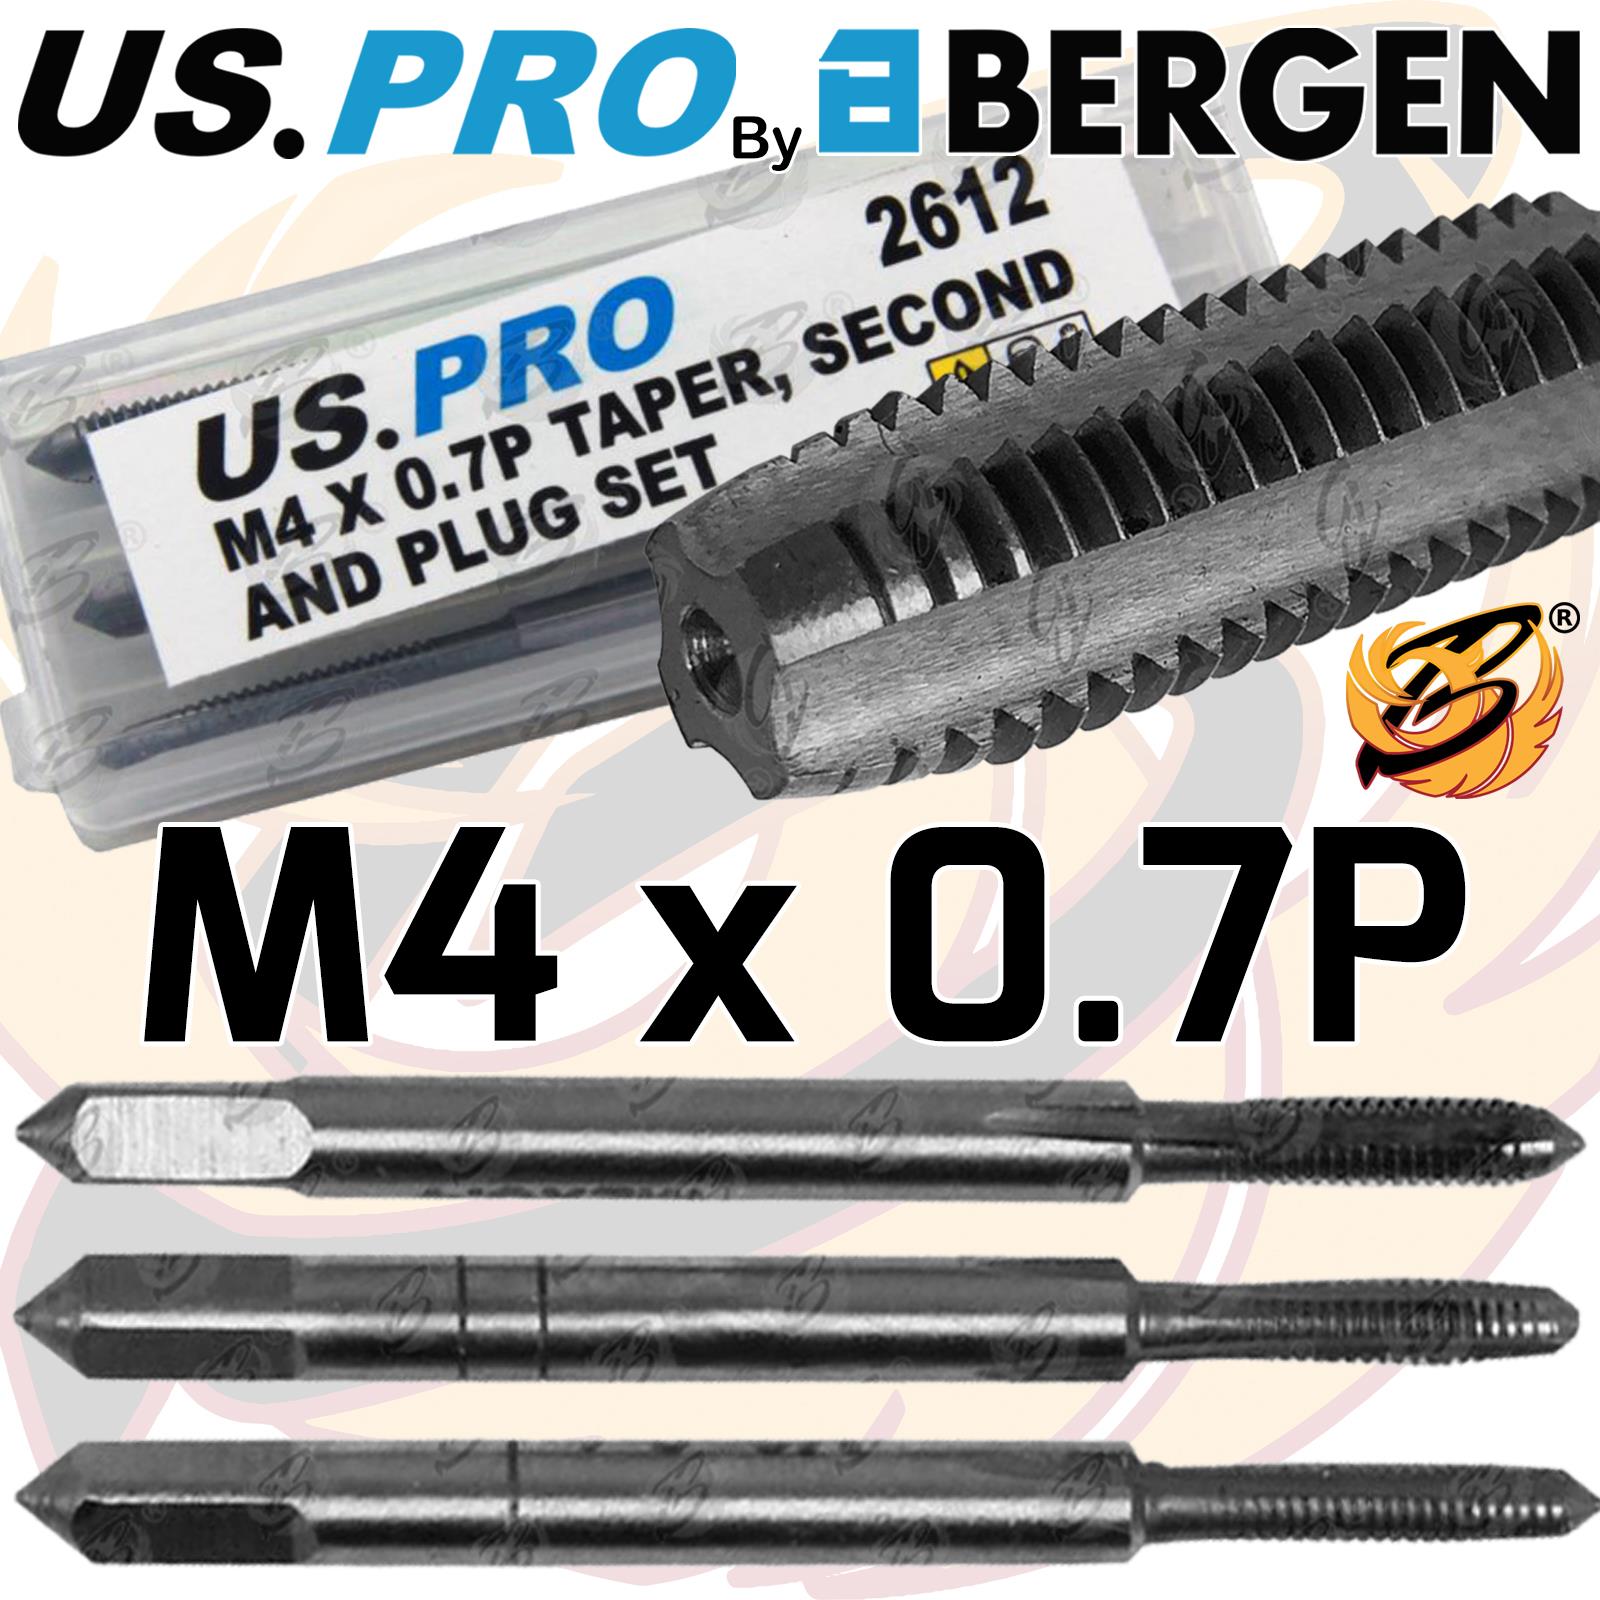 US PRO M4 x 0.7P TAPER, SECOND & PLUG SET